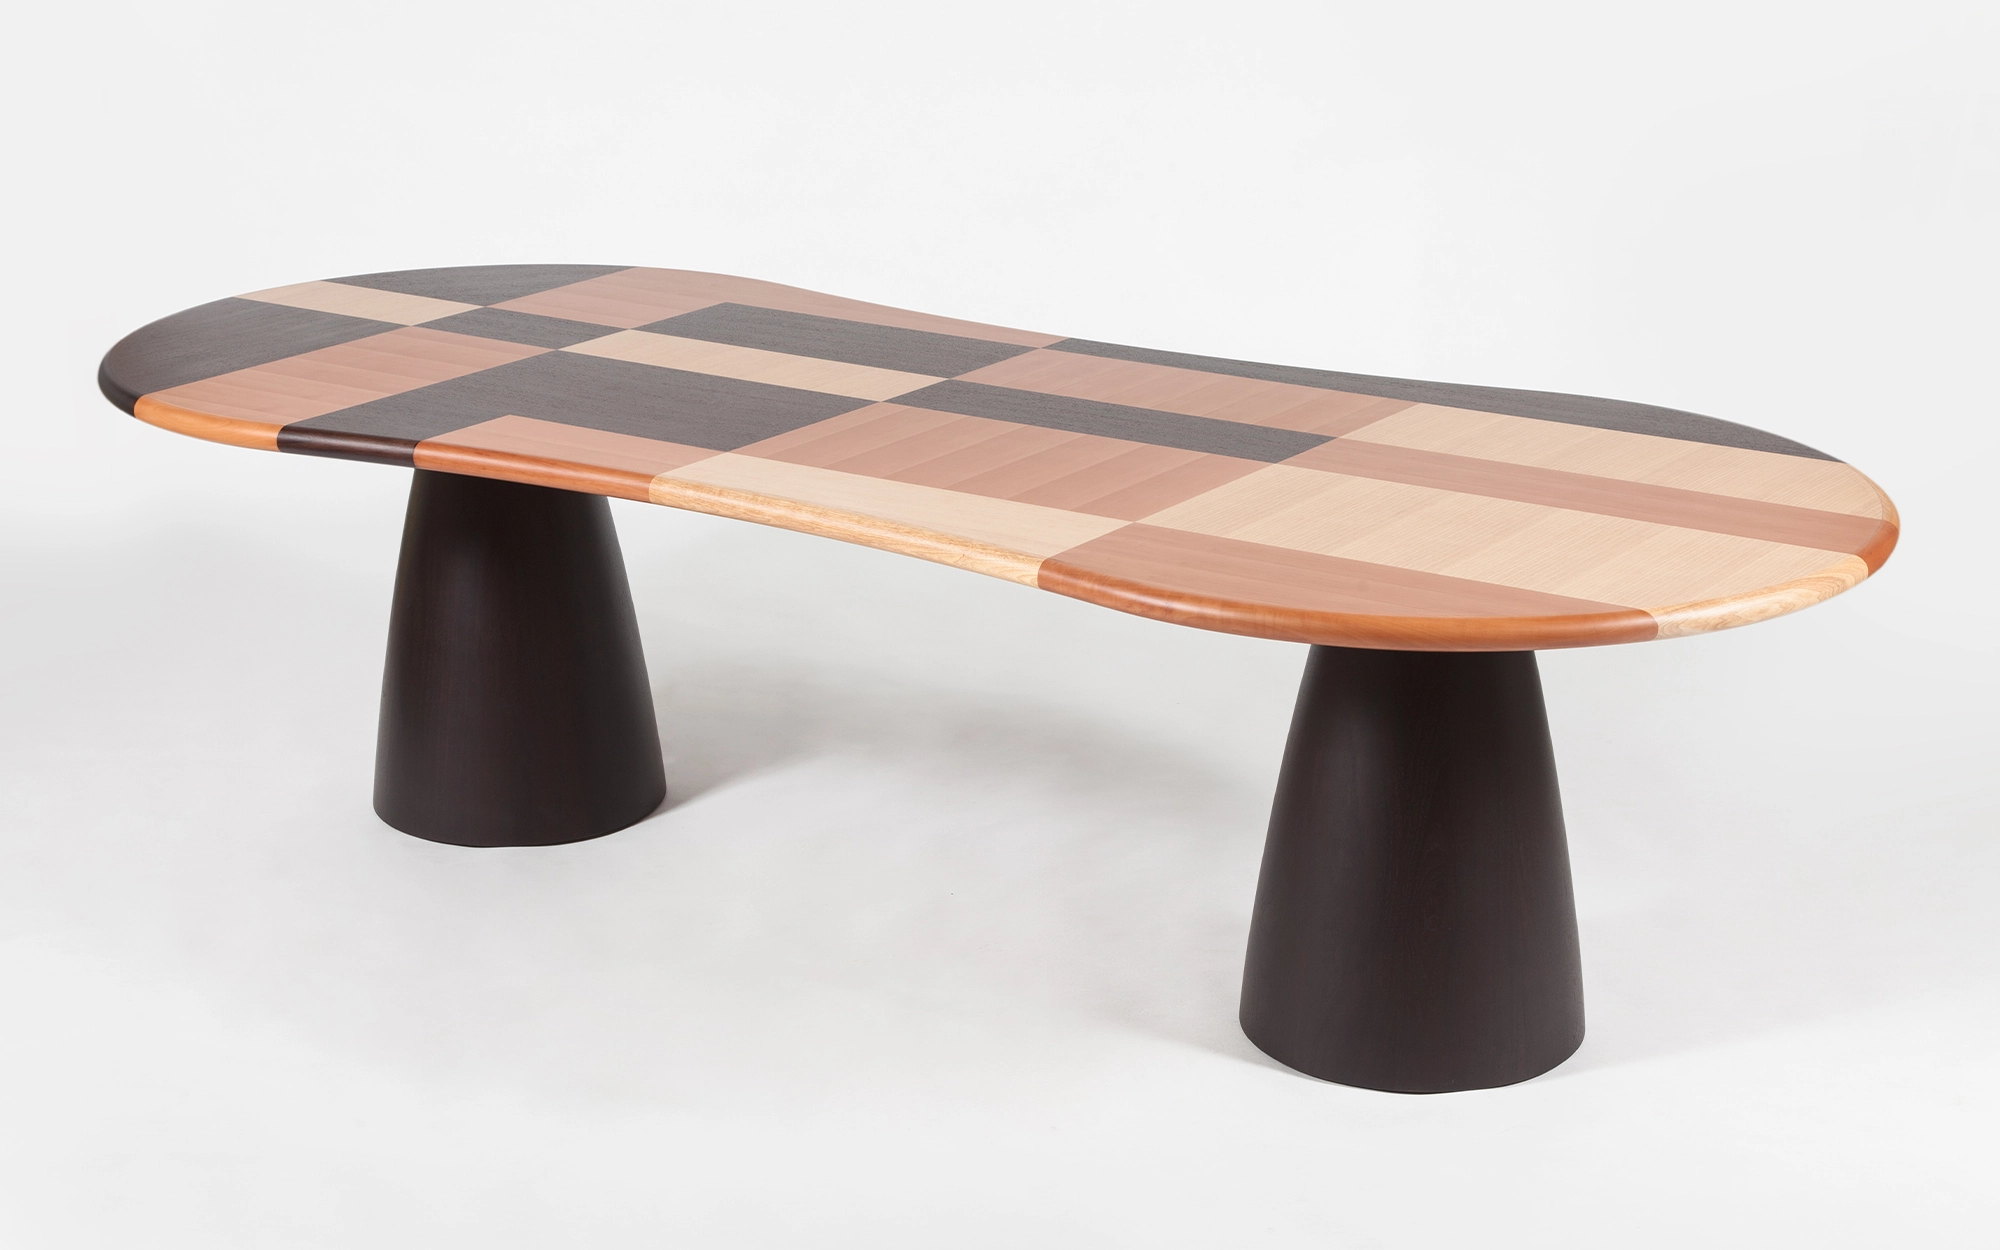 Firenze Table - Alessandro Mendini - Sofa - Galerie kreo